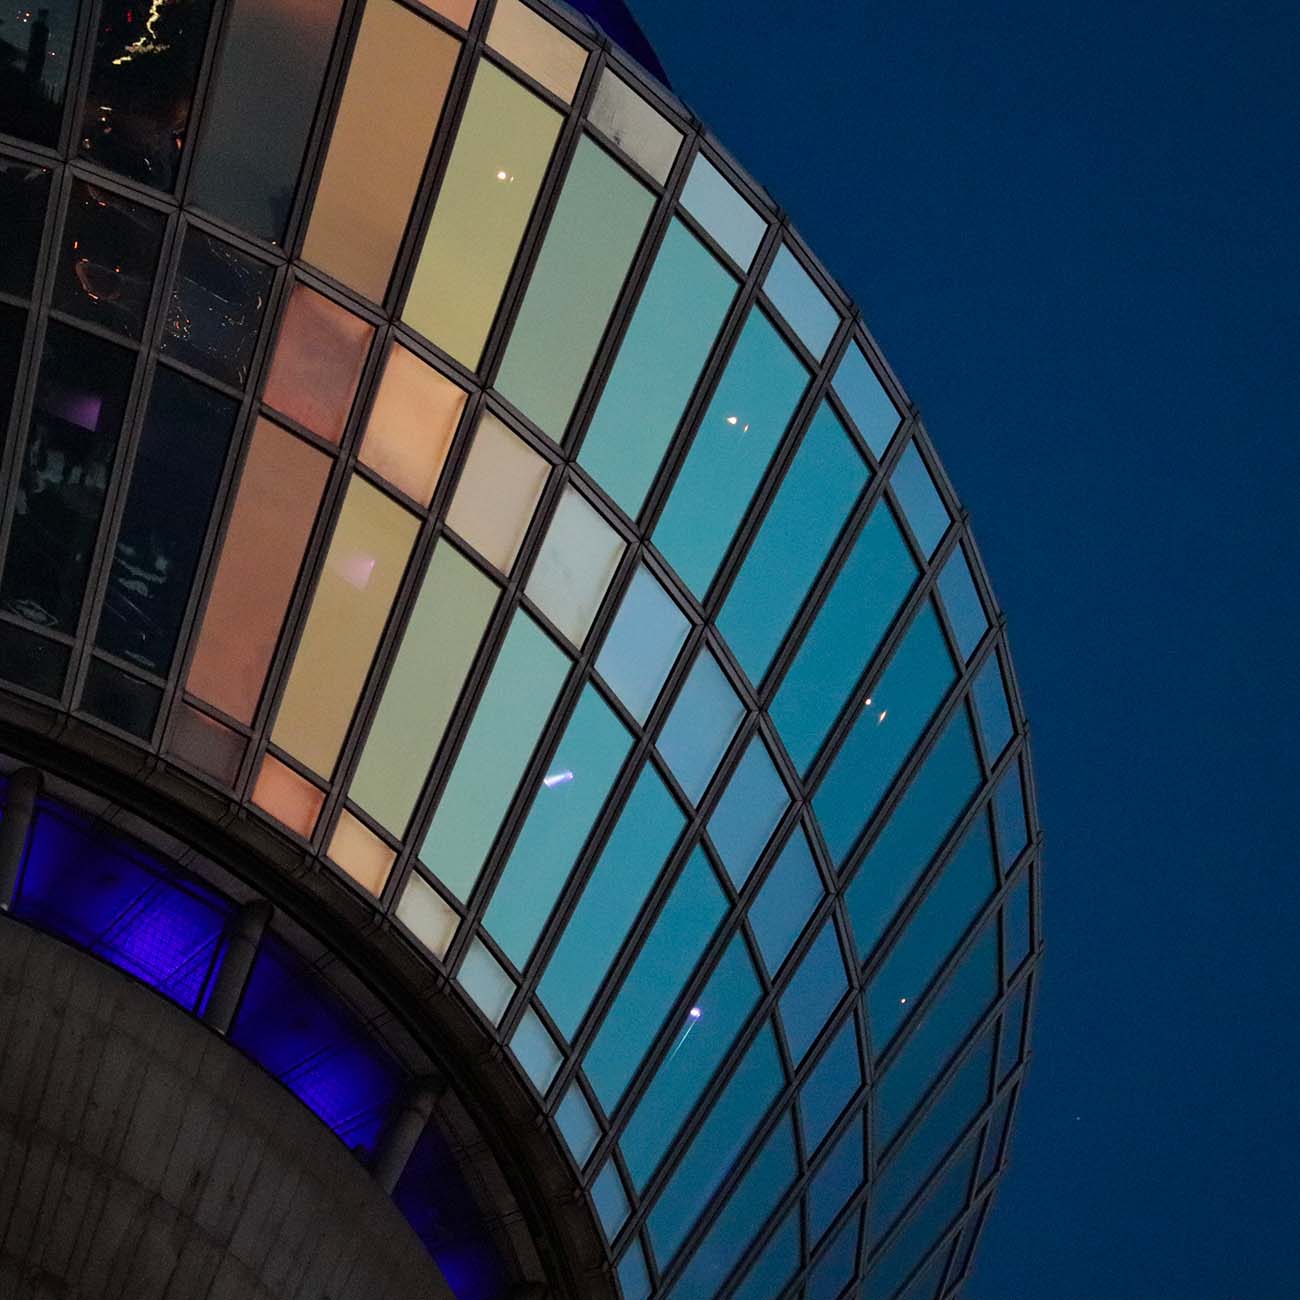 Auf dem Bild ist ein Ausschnitt des Düsseldorfer Rheinturms zu sehen. Die Scheiben sind in einem Farbverlauf von gold zu blau getaucht, da gerade der Übergang von goldener zu blauer Stunde stattfindet. Im Hintergrund sieht man den dunkelblauen Abendhimmel.